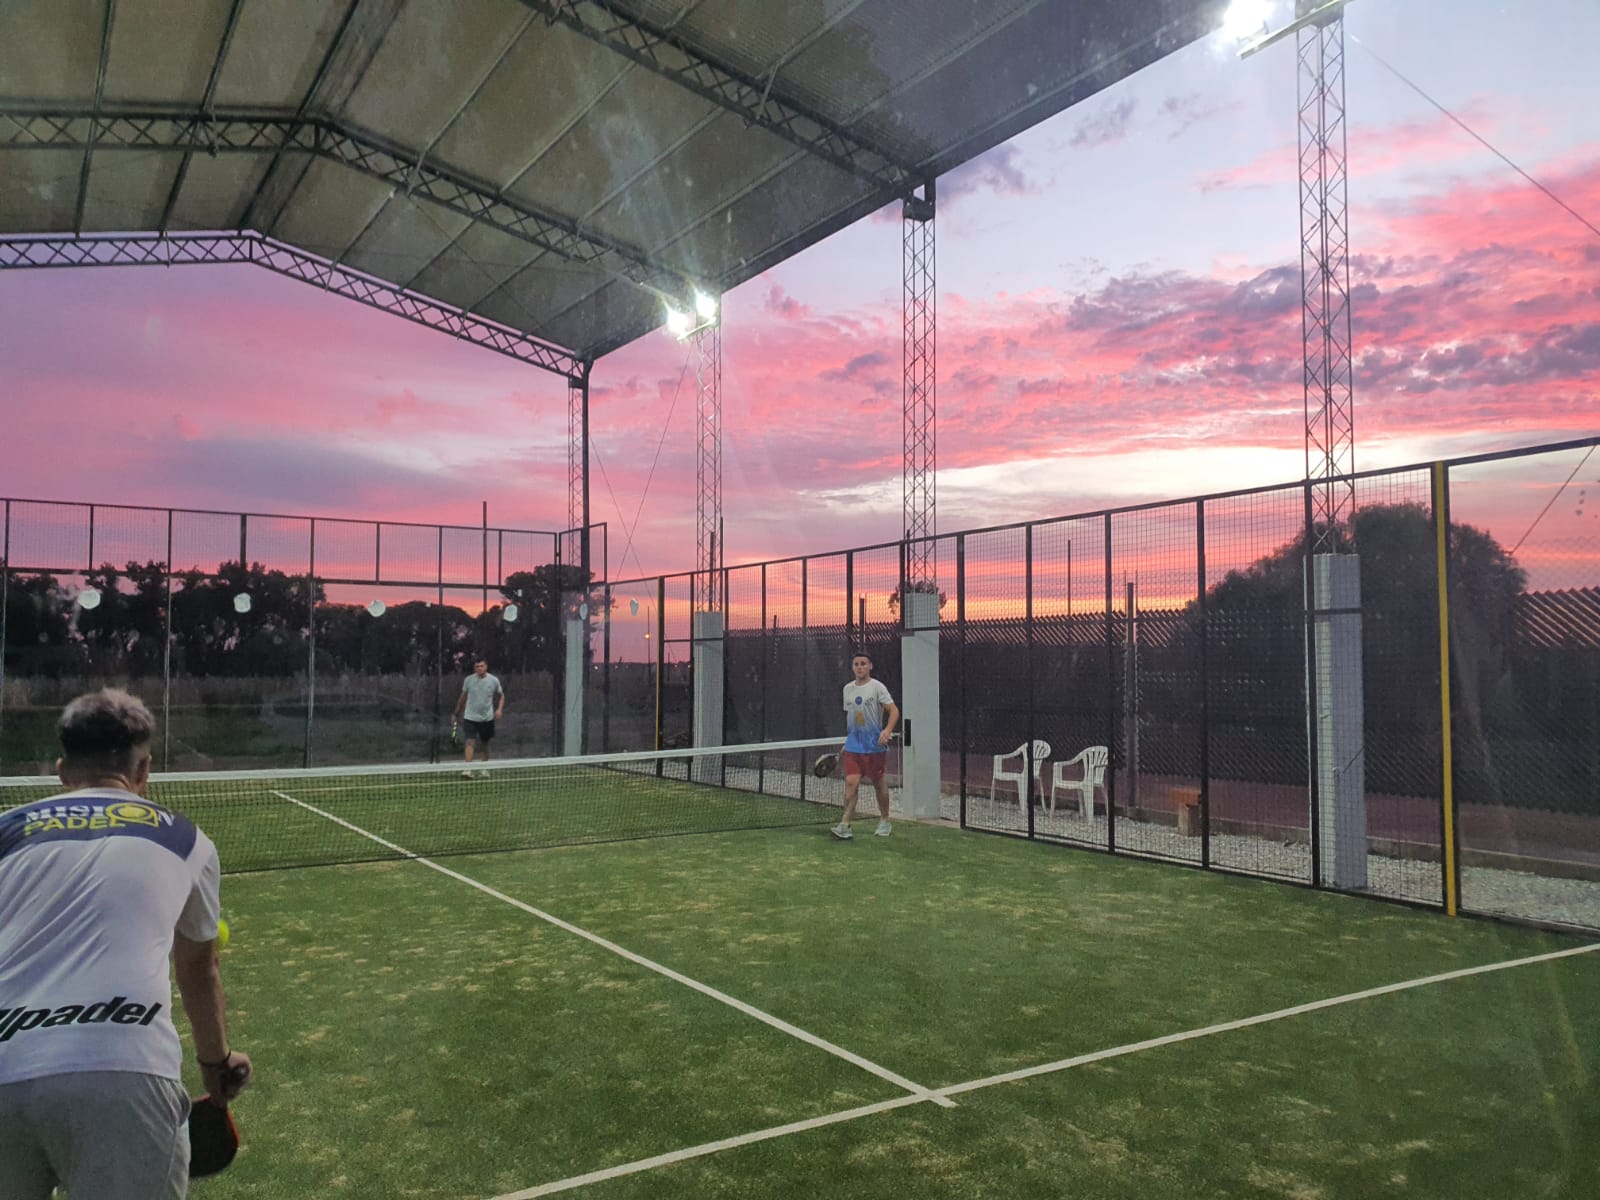 Club Gran Rosario suma instalaciones y deportes: ahora también escuela de Paddle